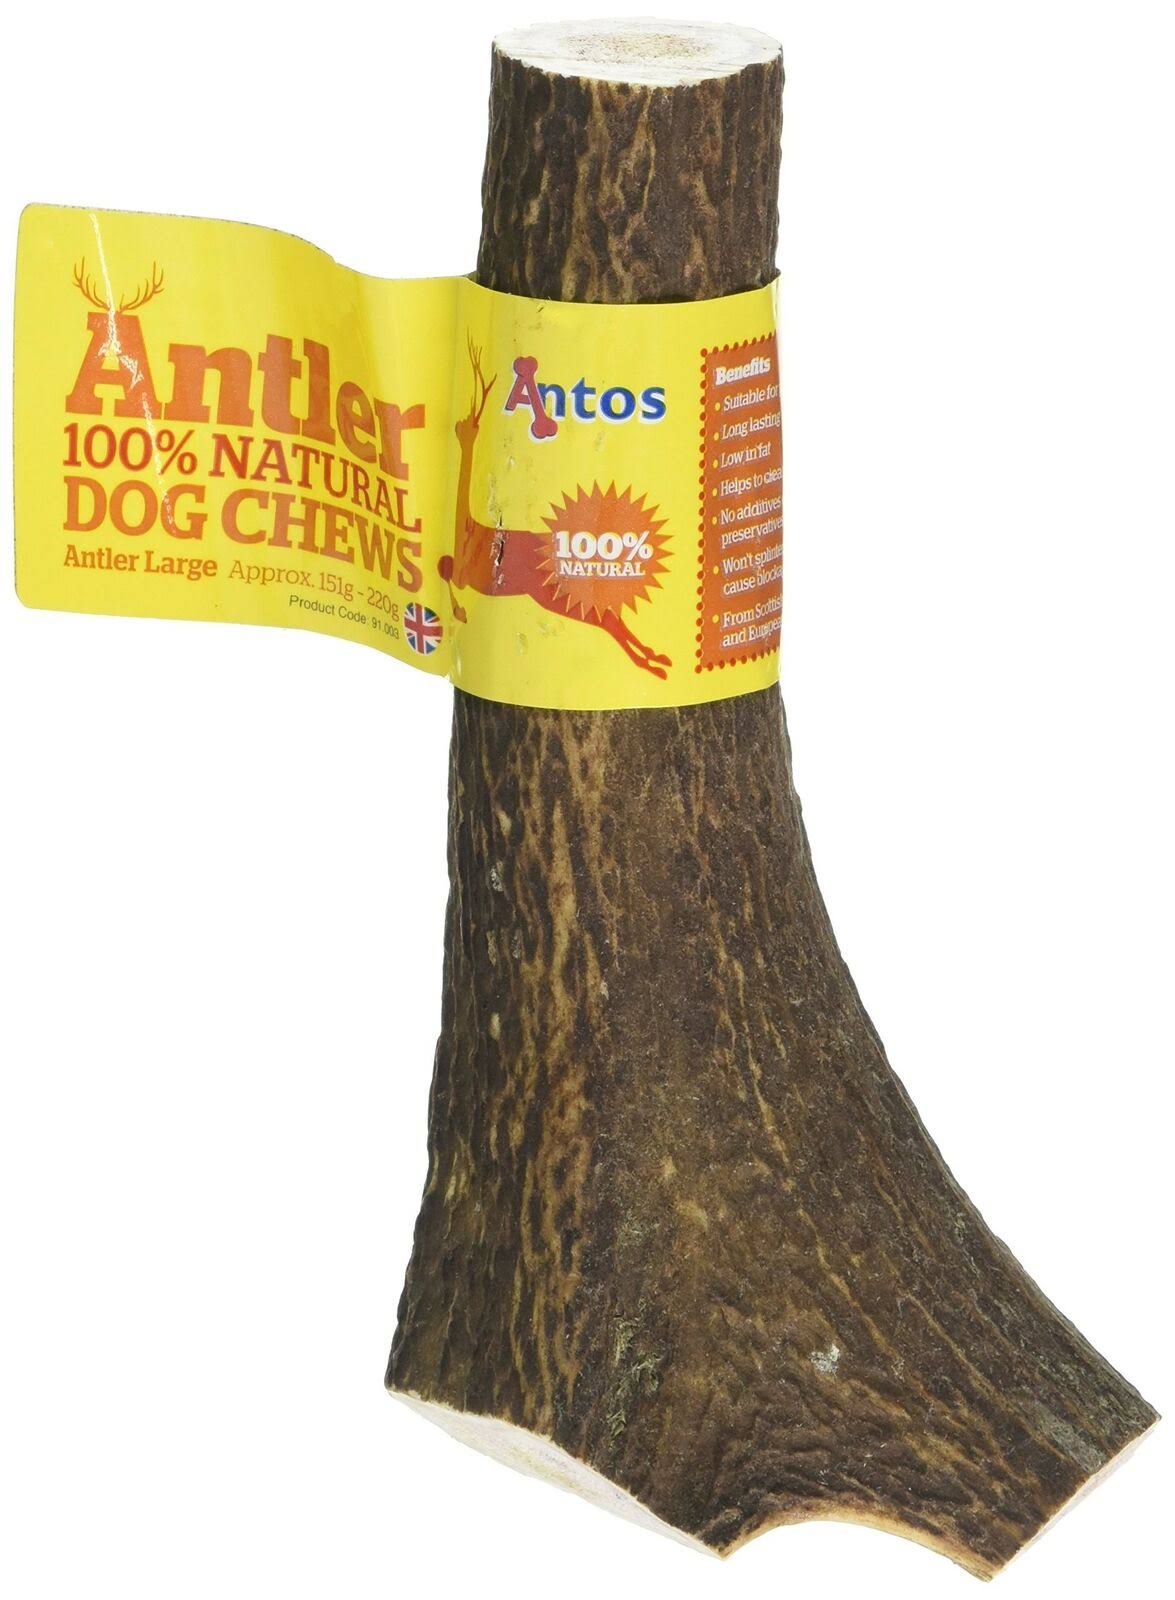 Antos Antler Natural Dog Chew - Large, 151g+